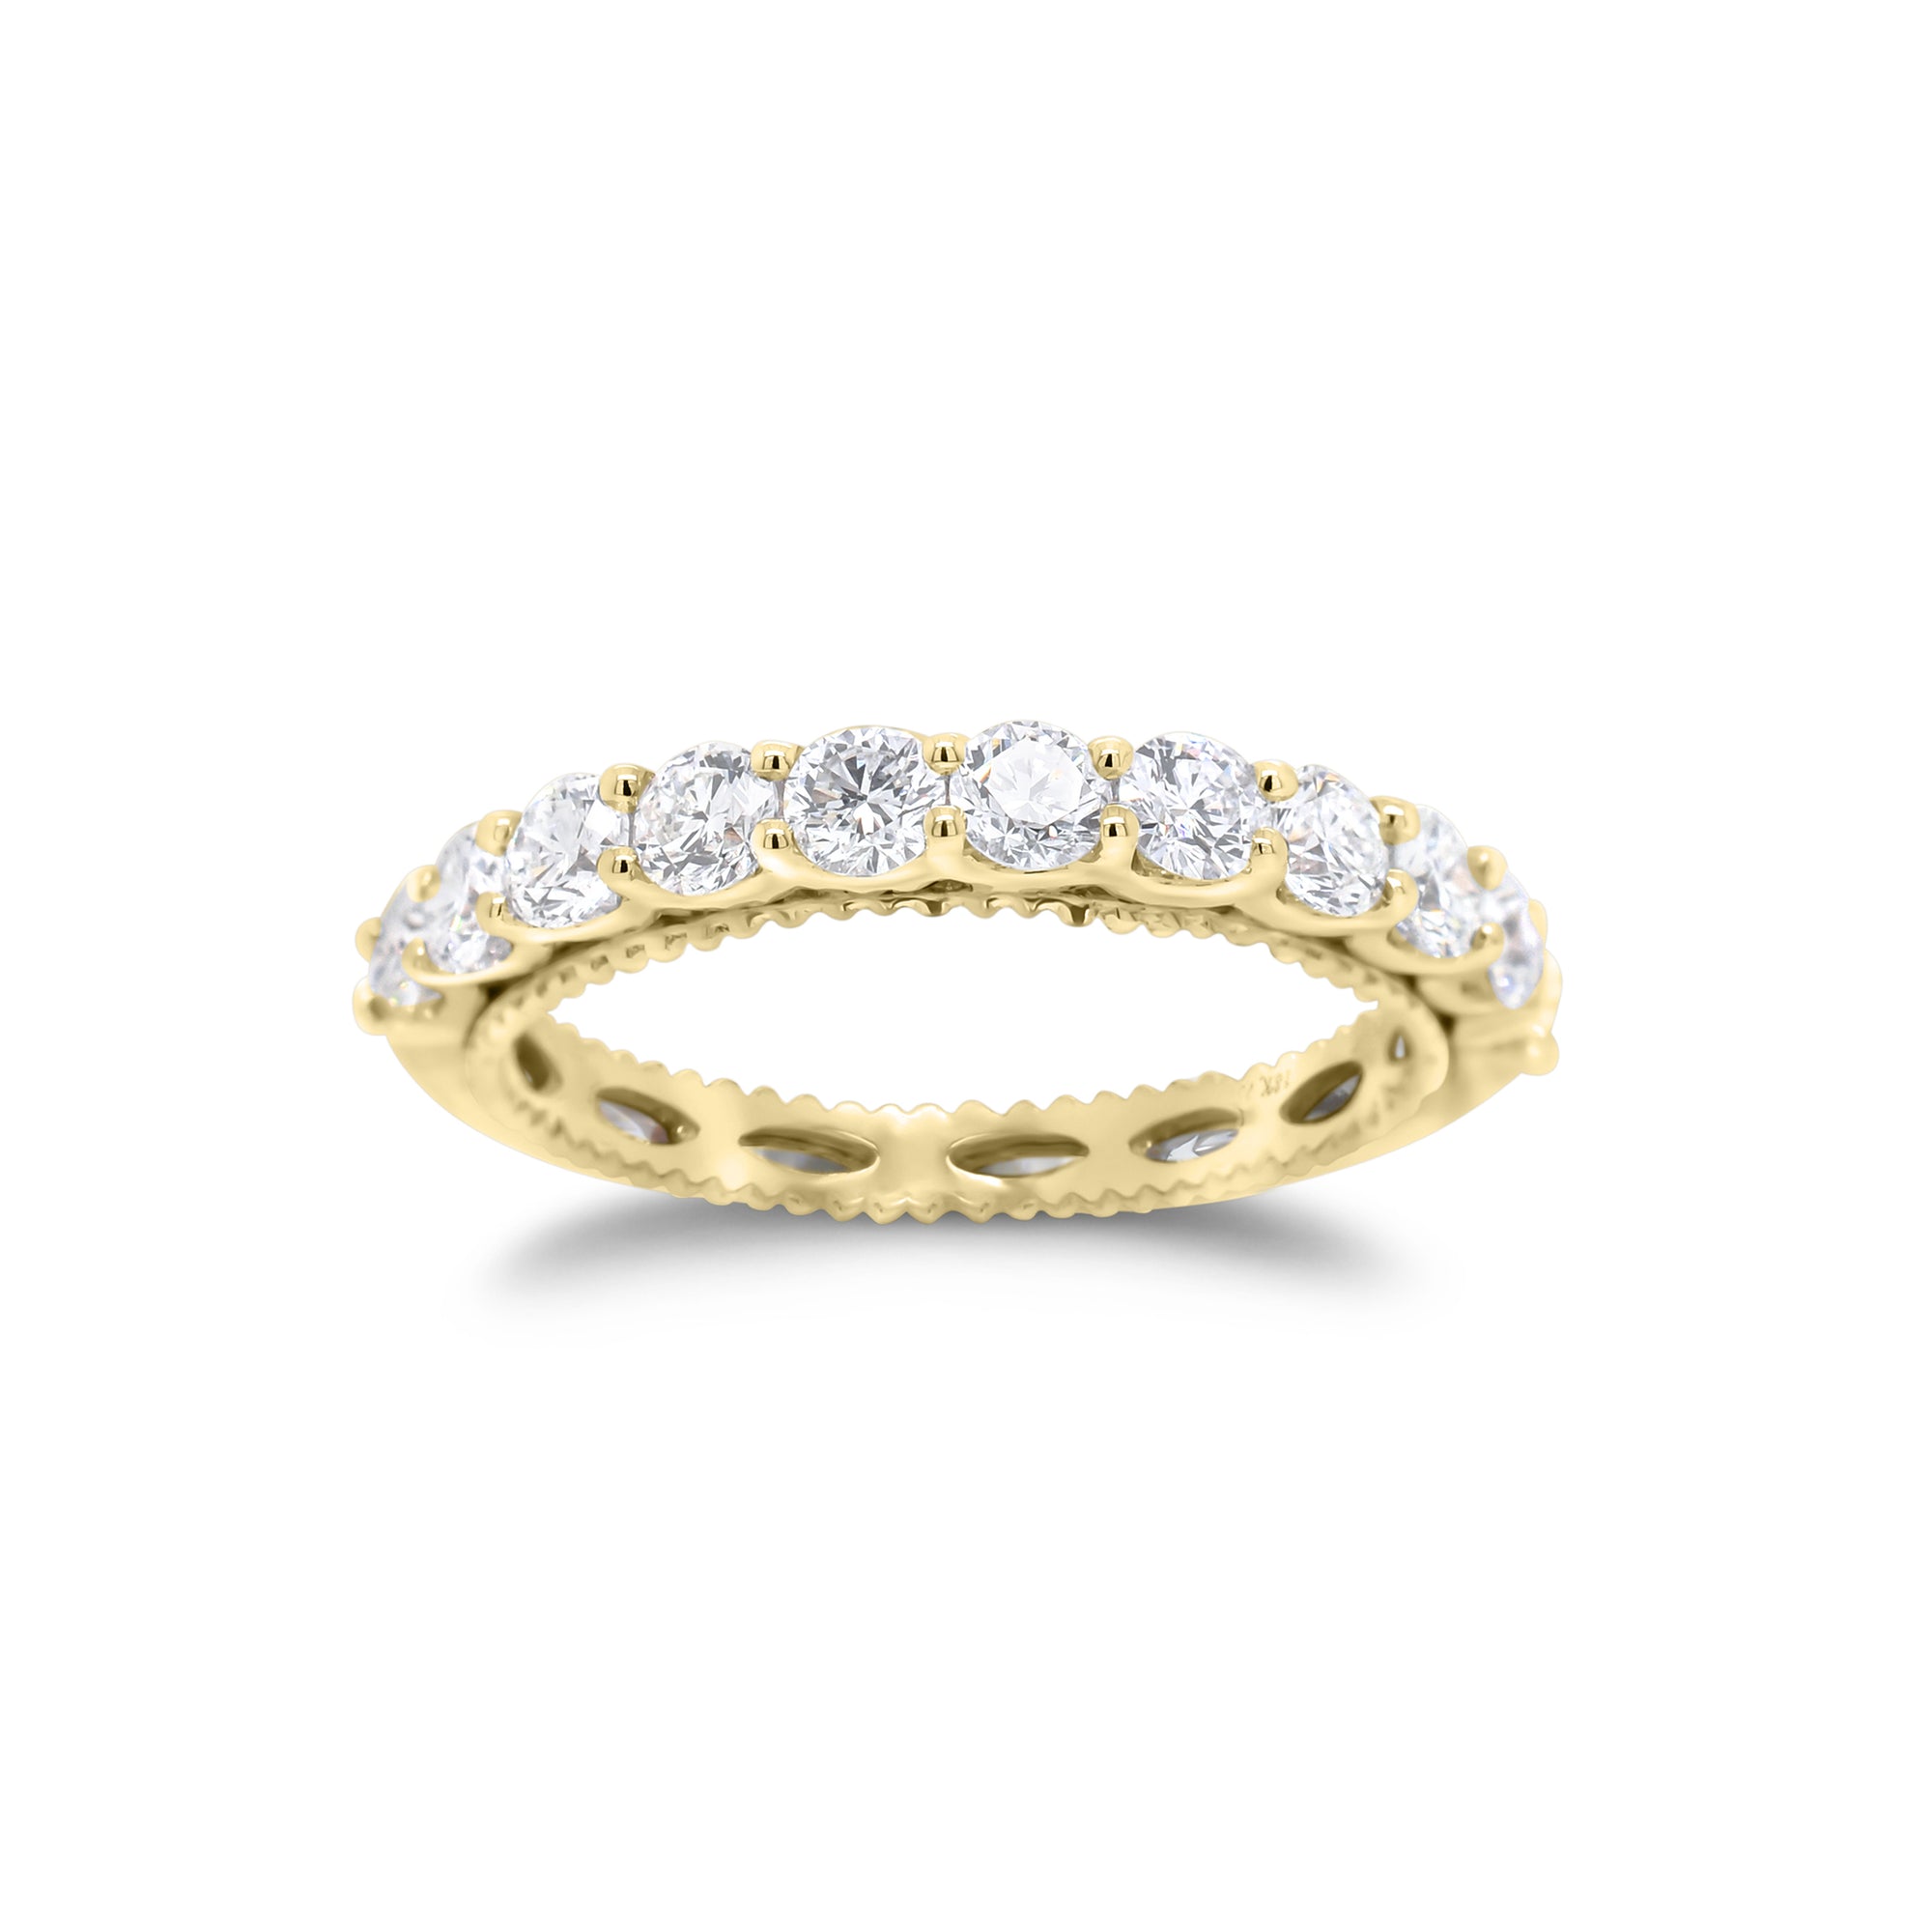 Diamond Two-Tone Gold Wedding Band - 18K gold weighing 2.65 grams  - 11 round diamonds totaling 1.0 carat